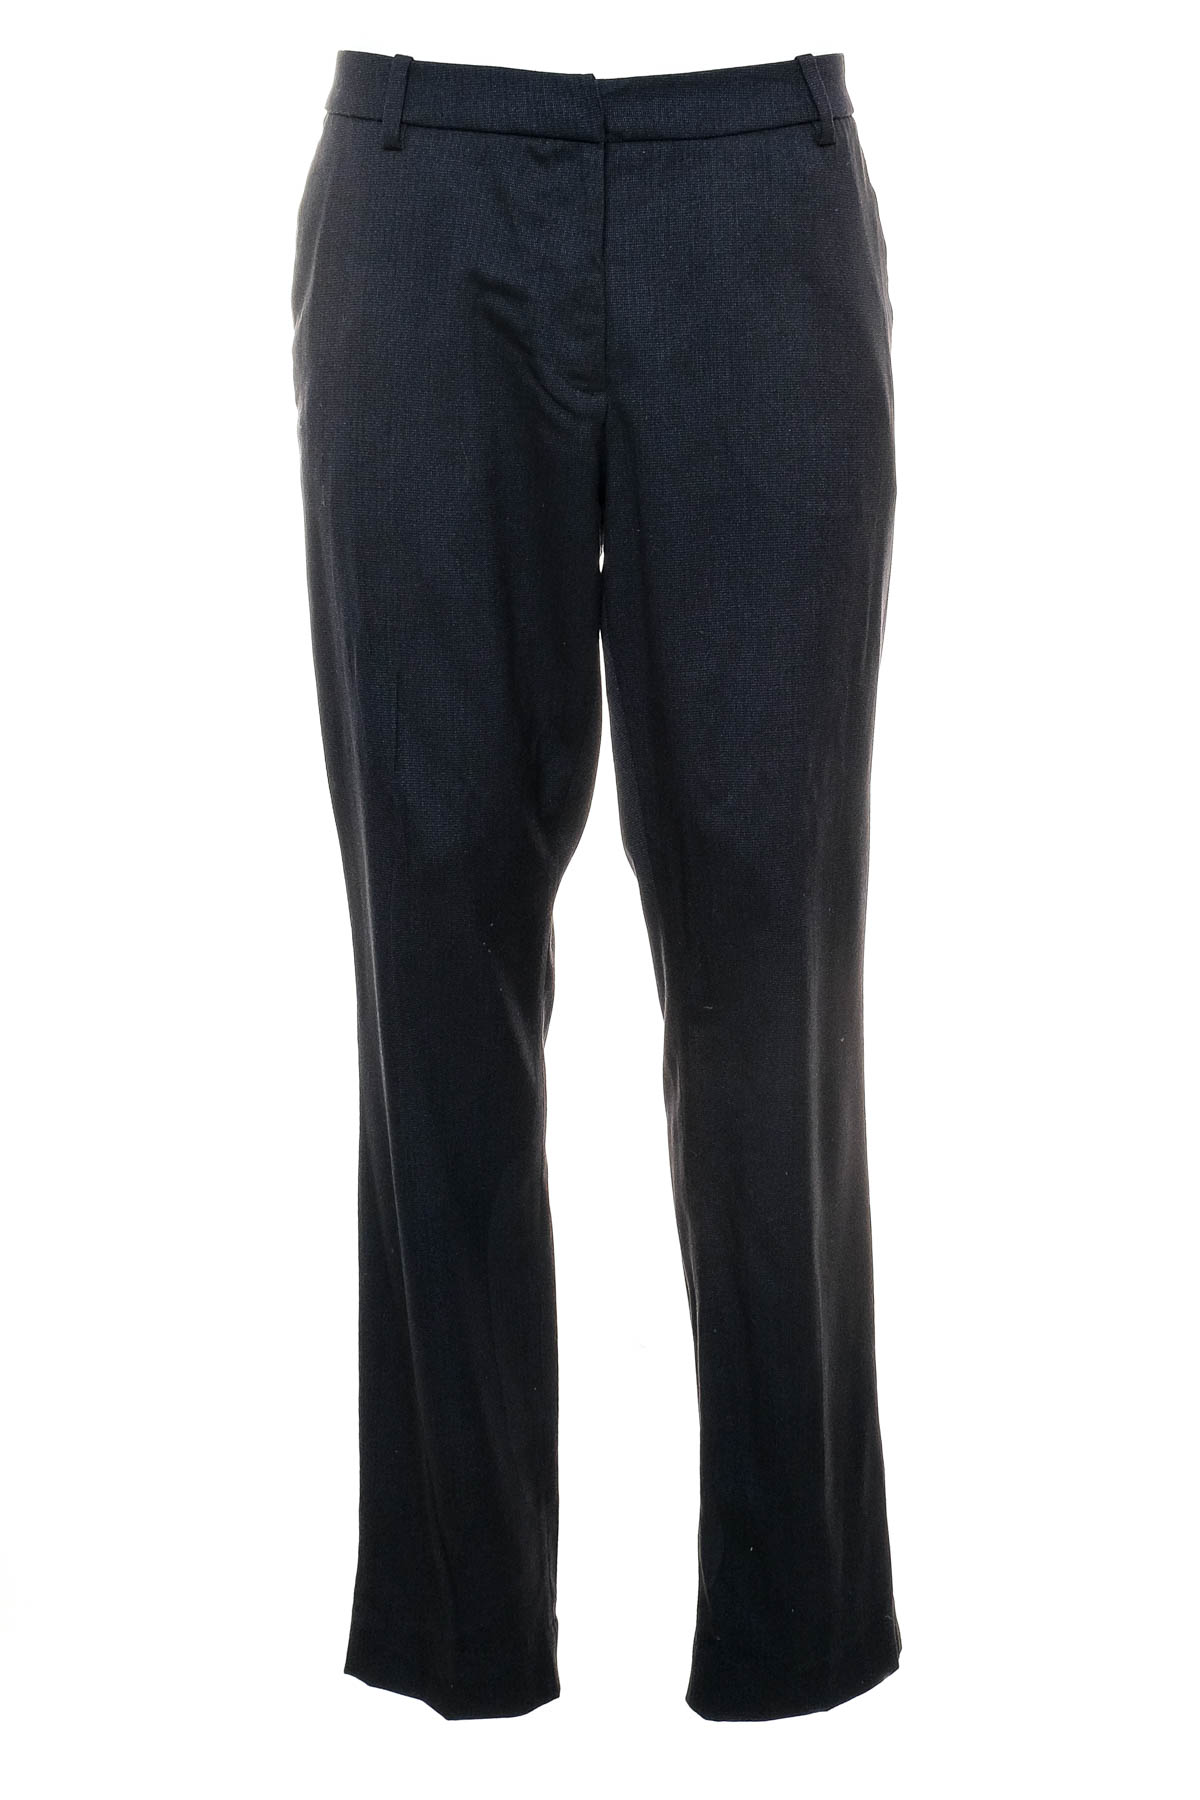 Pantaloni de damă - H&M - 0